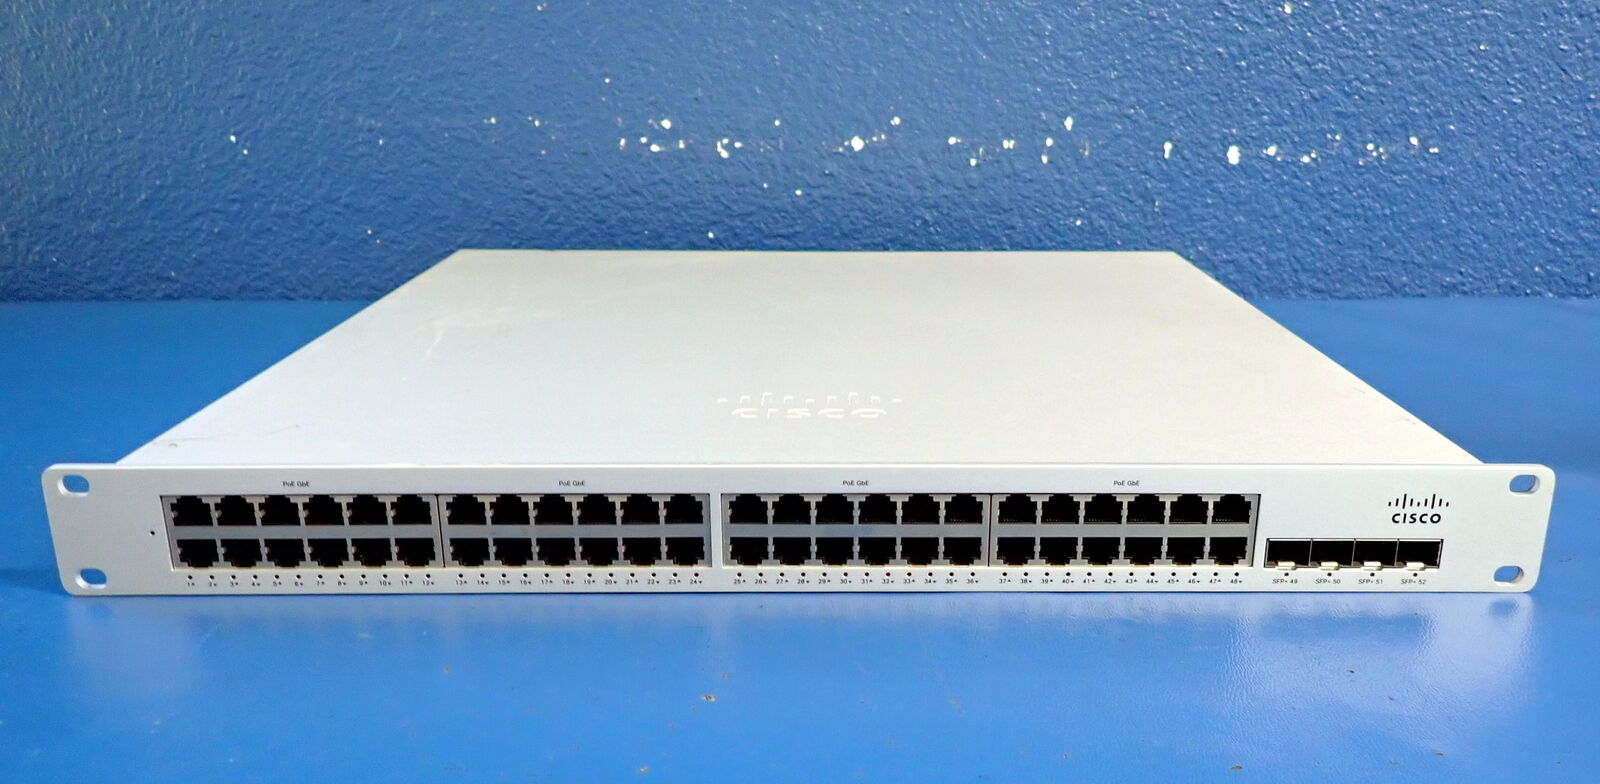 Cisco Meraki MS350-48LP